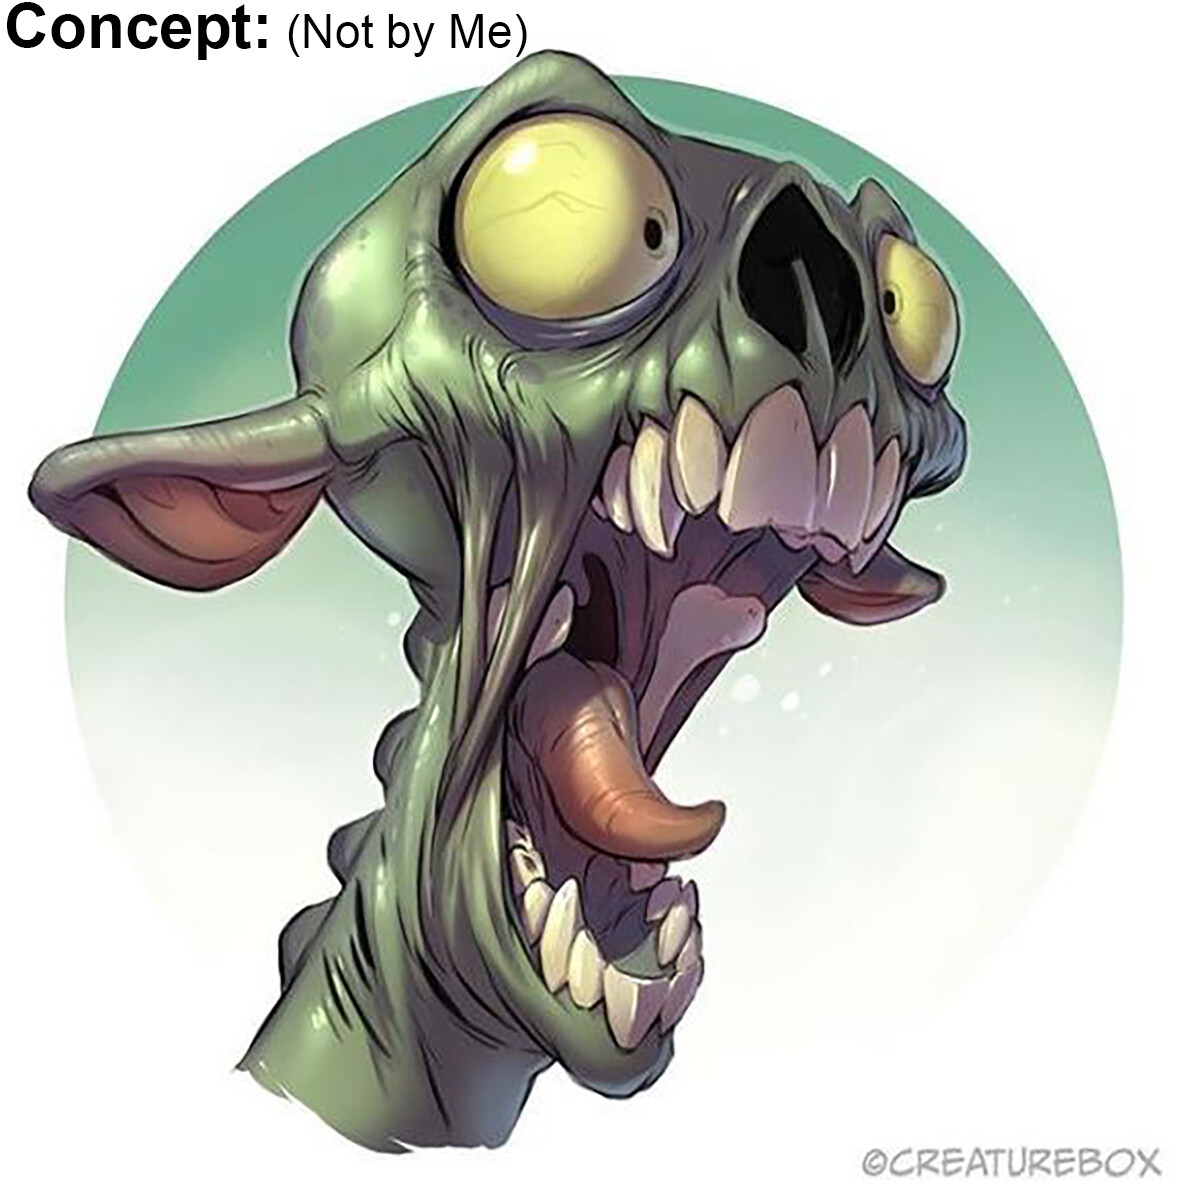 Concept by "Creaturebox": "Greg Baldwin" and David Guertin":  http://creaturebox.com/gallery/